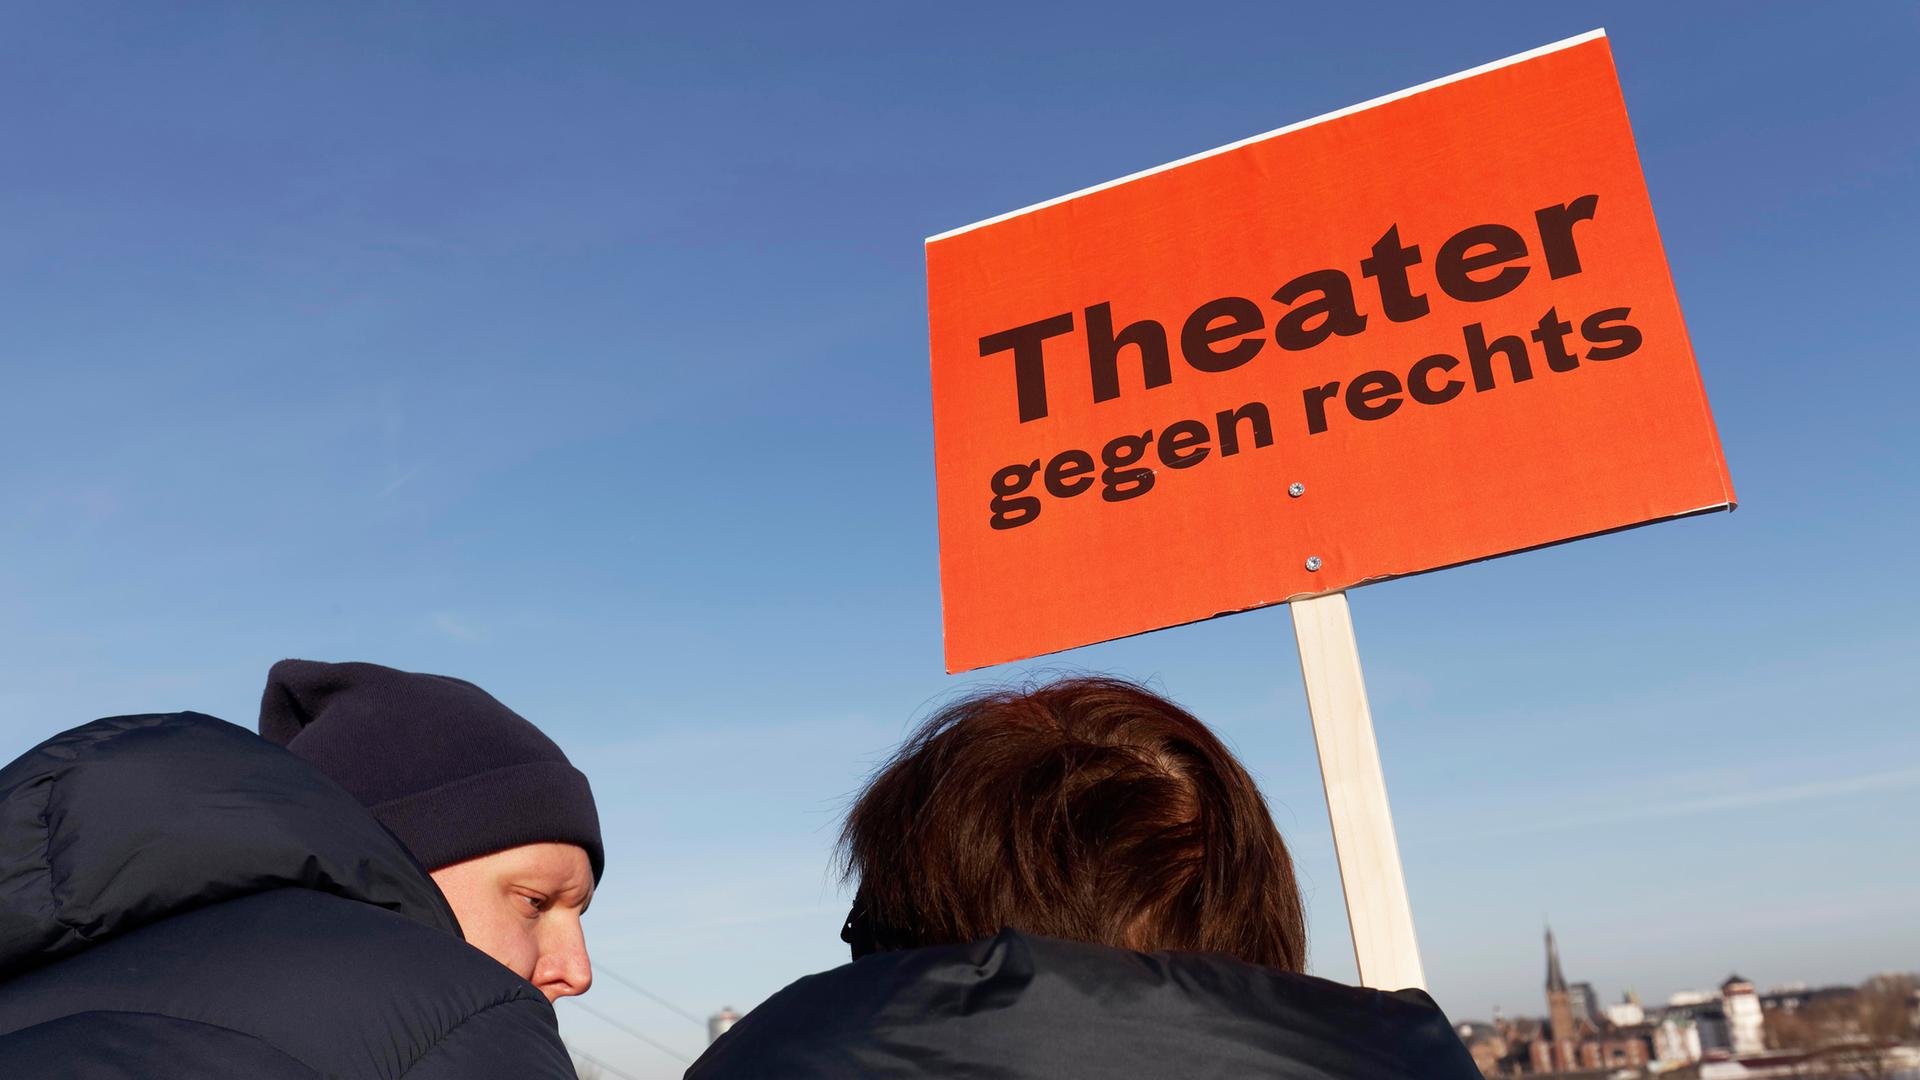 Demonstranten mit Transparent "Theater gegen rechts", bei einer Großdemo gegen Rechtsextremismus am 27.1.2024 in Düsseldorf.